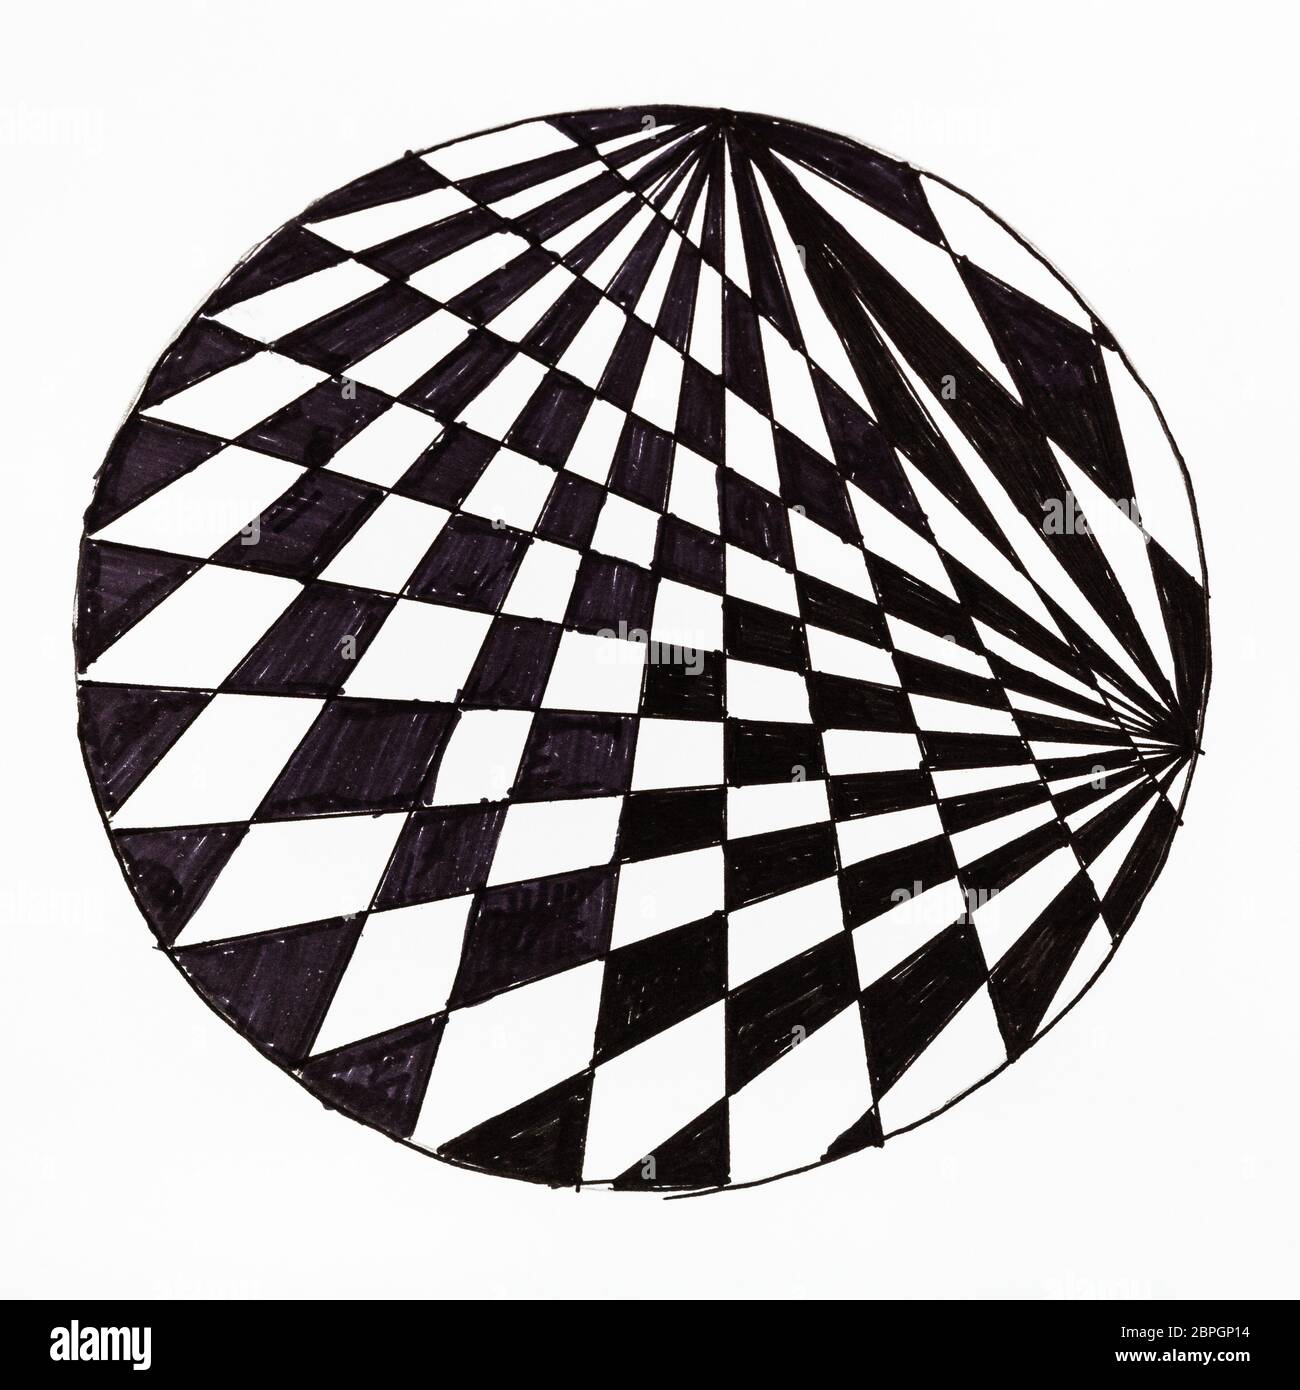 Abstrakte handgezeichnete Muster auf weißem Papier mit Filzstift - Schwarz-weiß karierten Ornament im Kreis Stockfoto